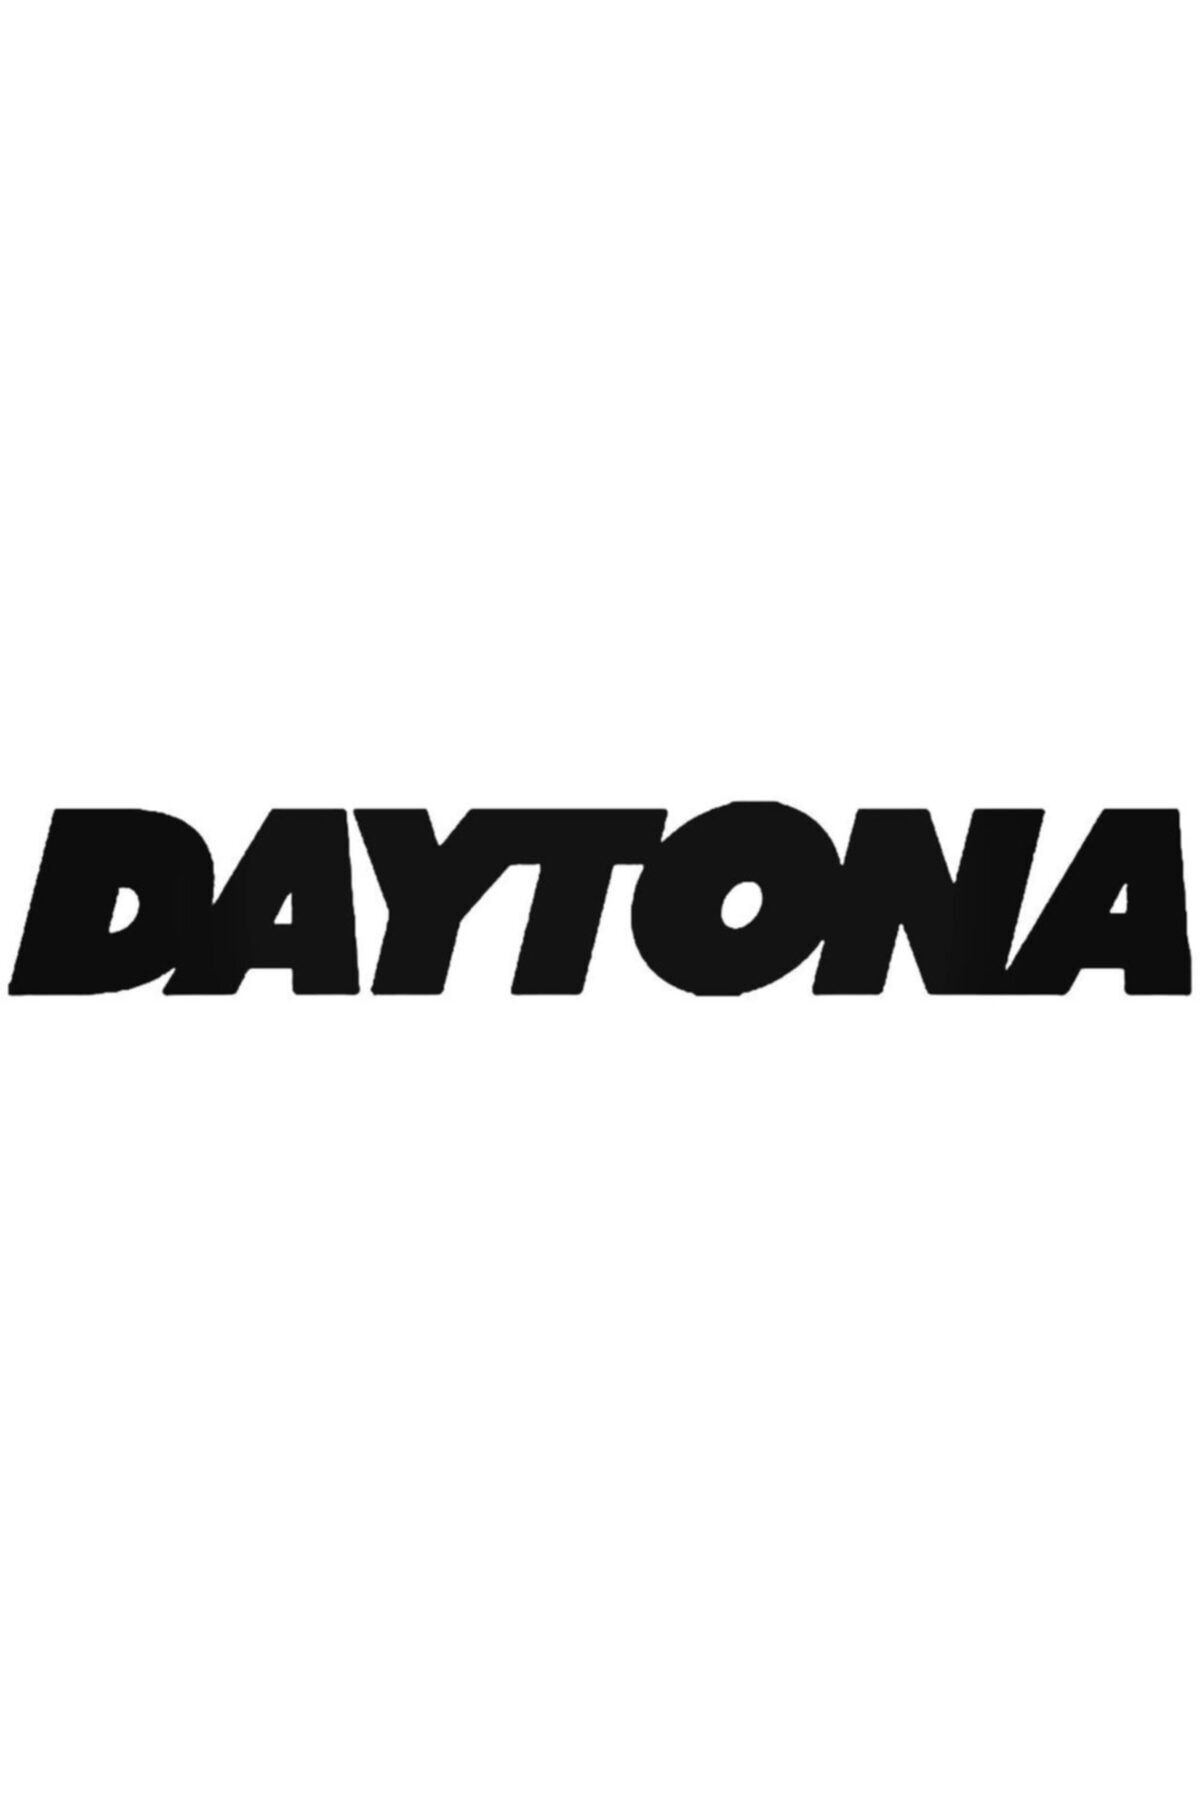 Genel Markalar Daytona Sticker Araba Oto Arma Duvar Çıkartma 20 cm